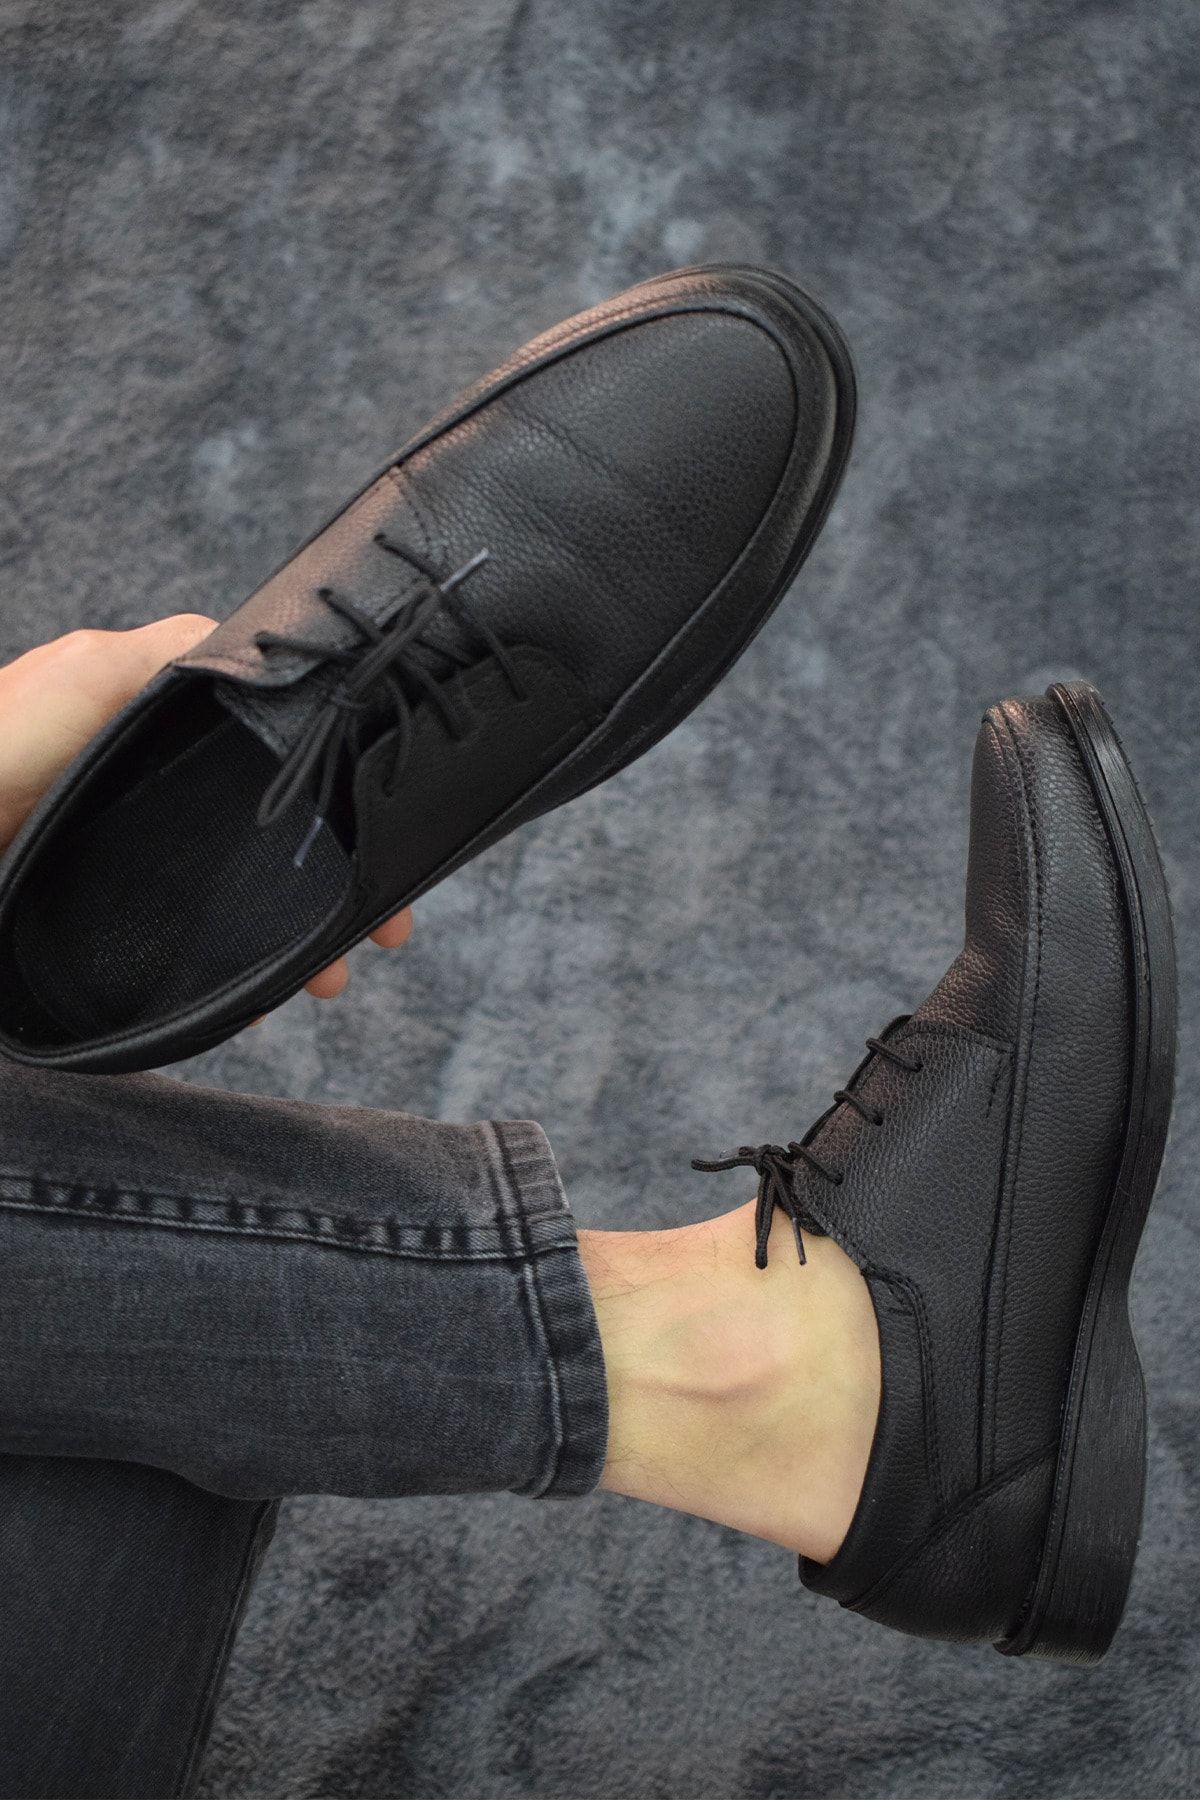 capel hor-se Erkek Siyah Bağcıklı Ayakkabı Suni Deri Baba Ayakkabısı Klasik Modern Tasarım